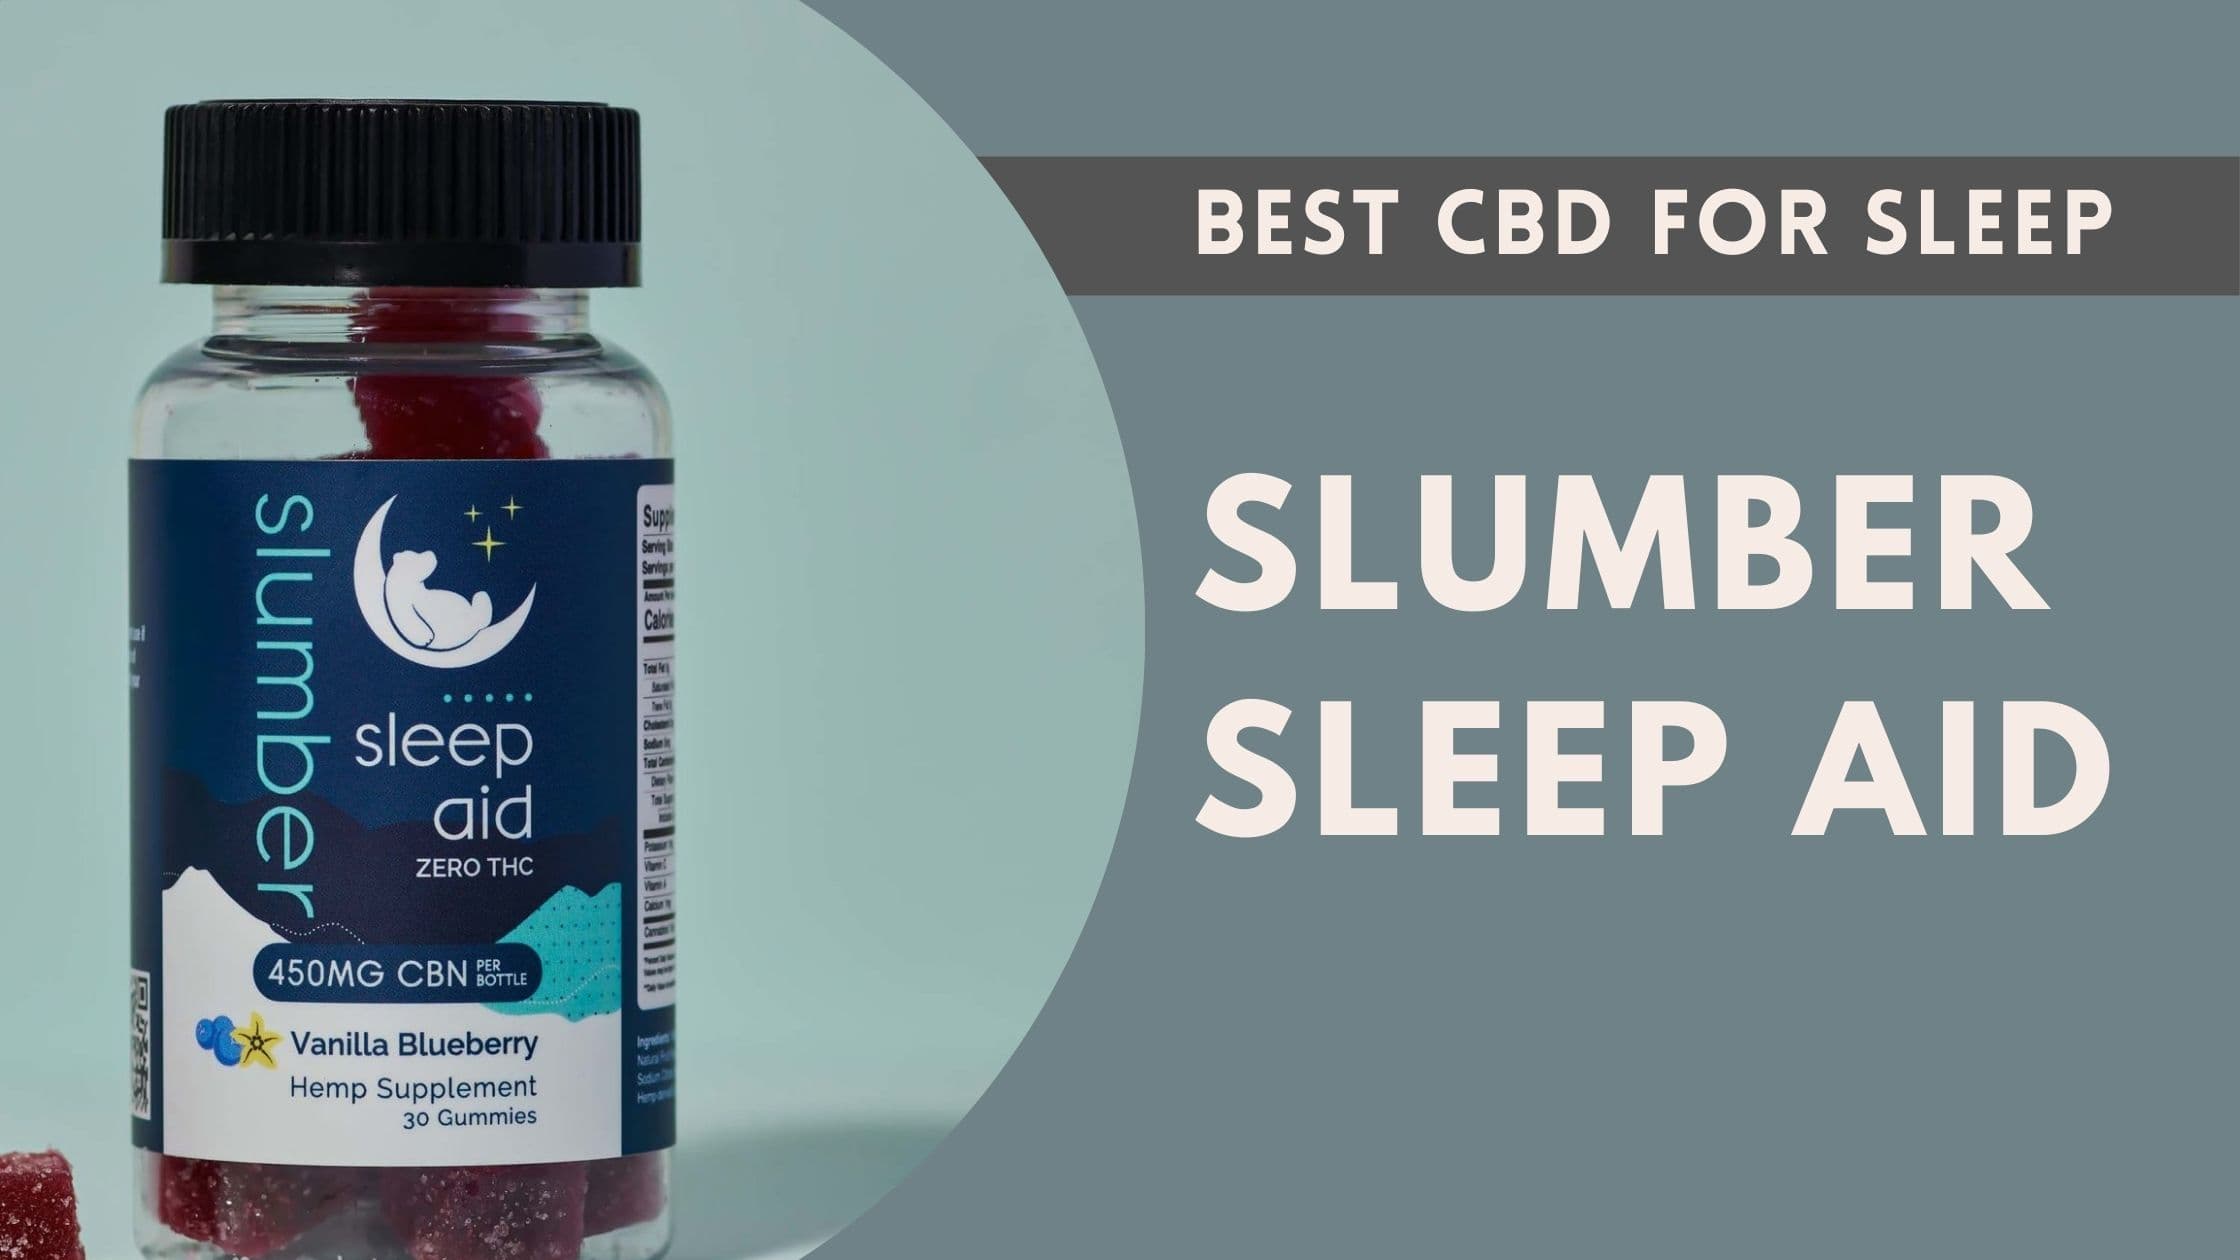 Slumber Sleep Aid best cbd for sleep